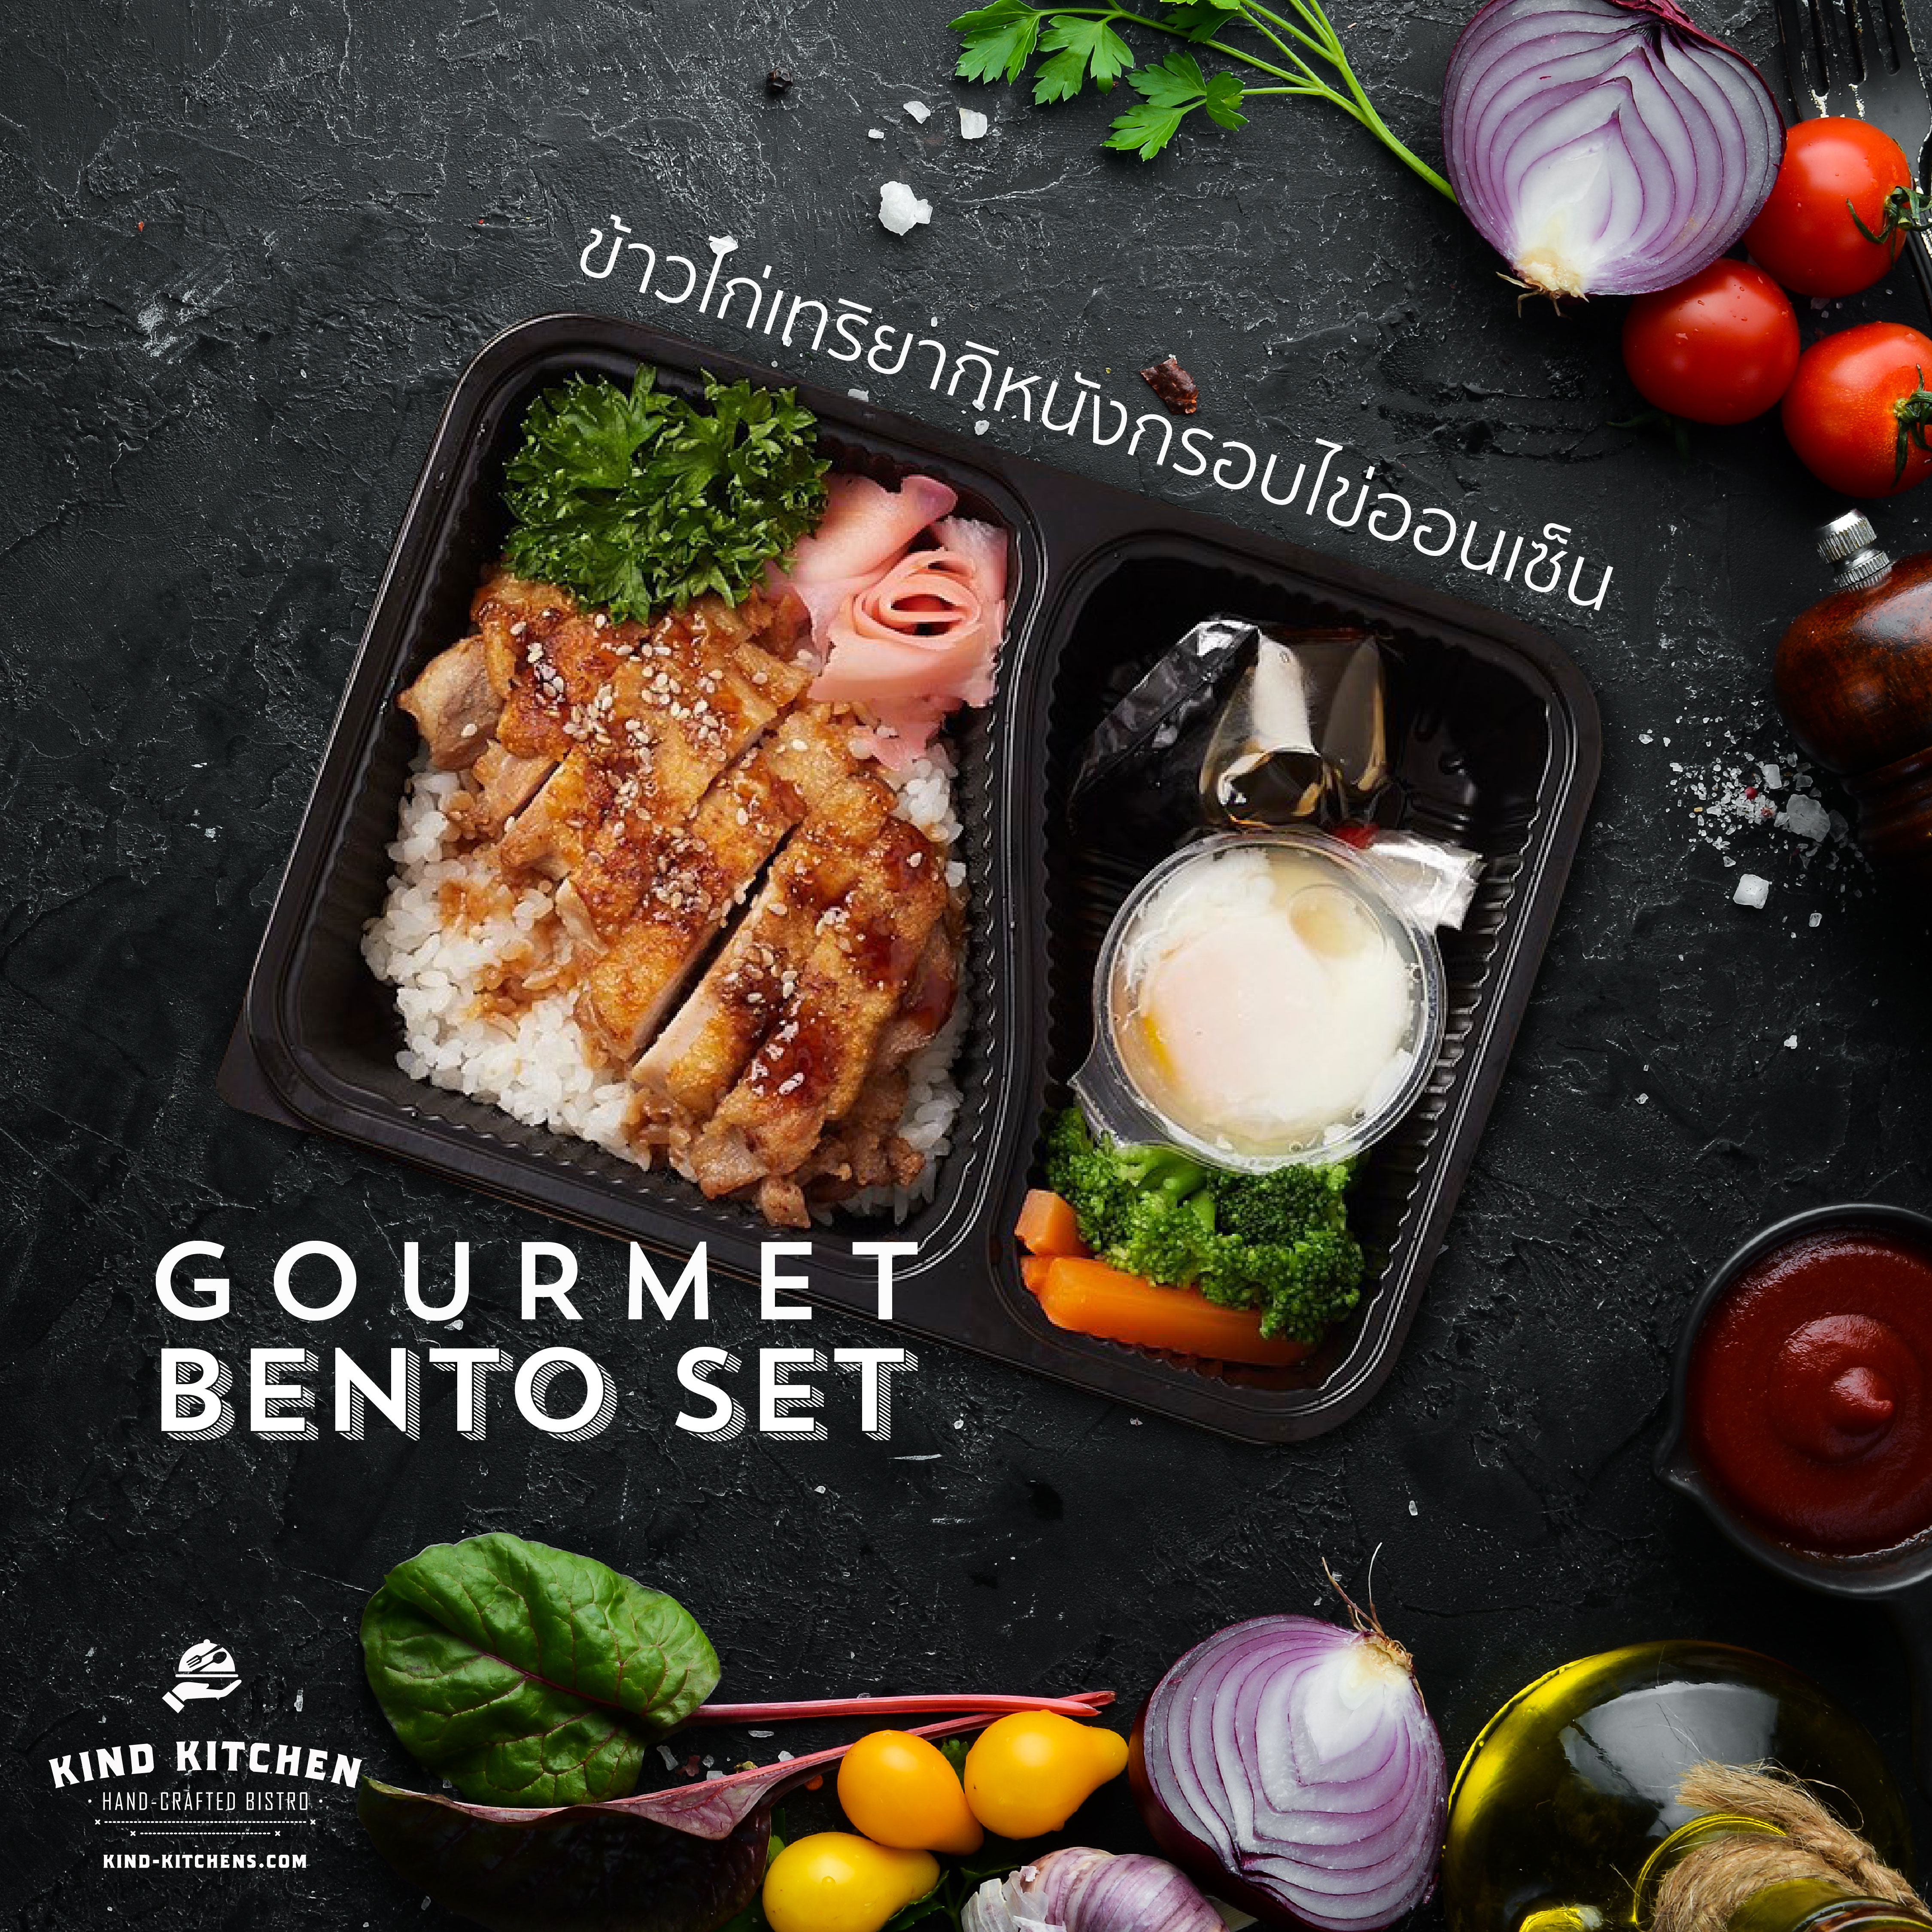 อาหารกล่อง Gourmet Bento Lunch Set_ข้าวไก่เทริยากิหนังกรอบไข่ออนเซ็น